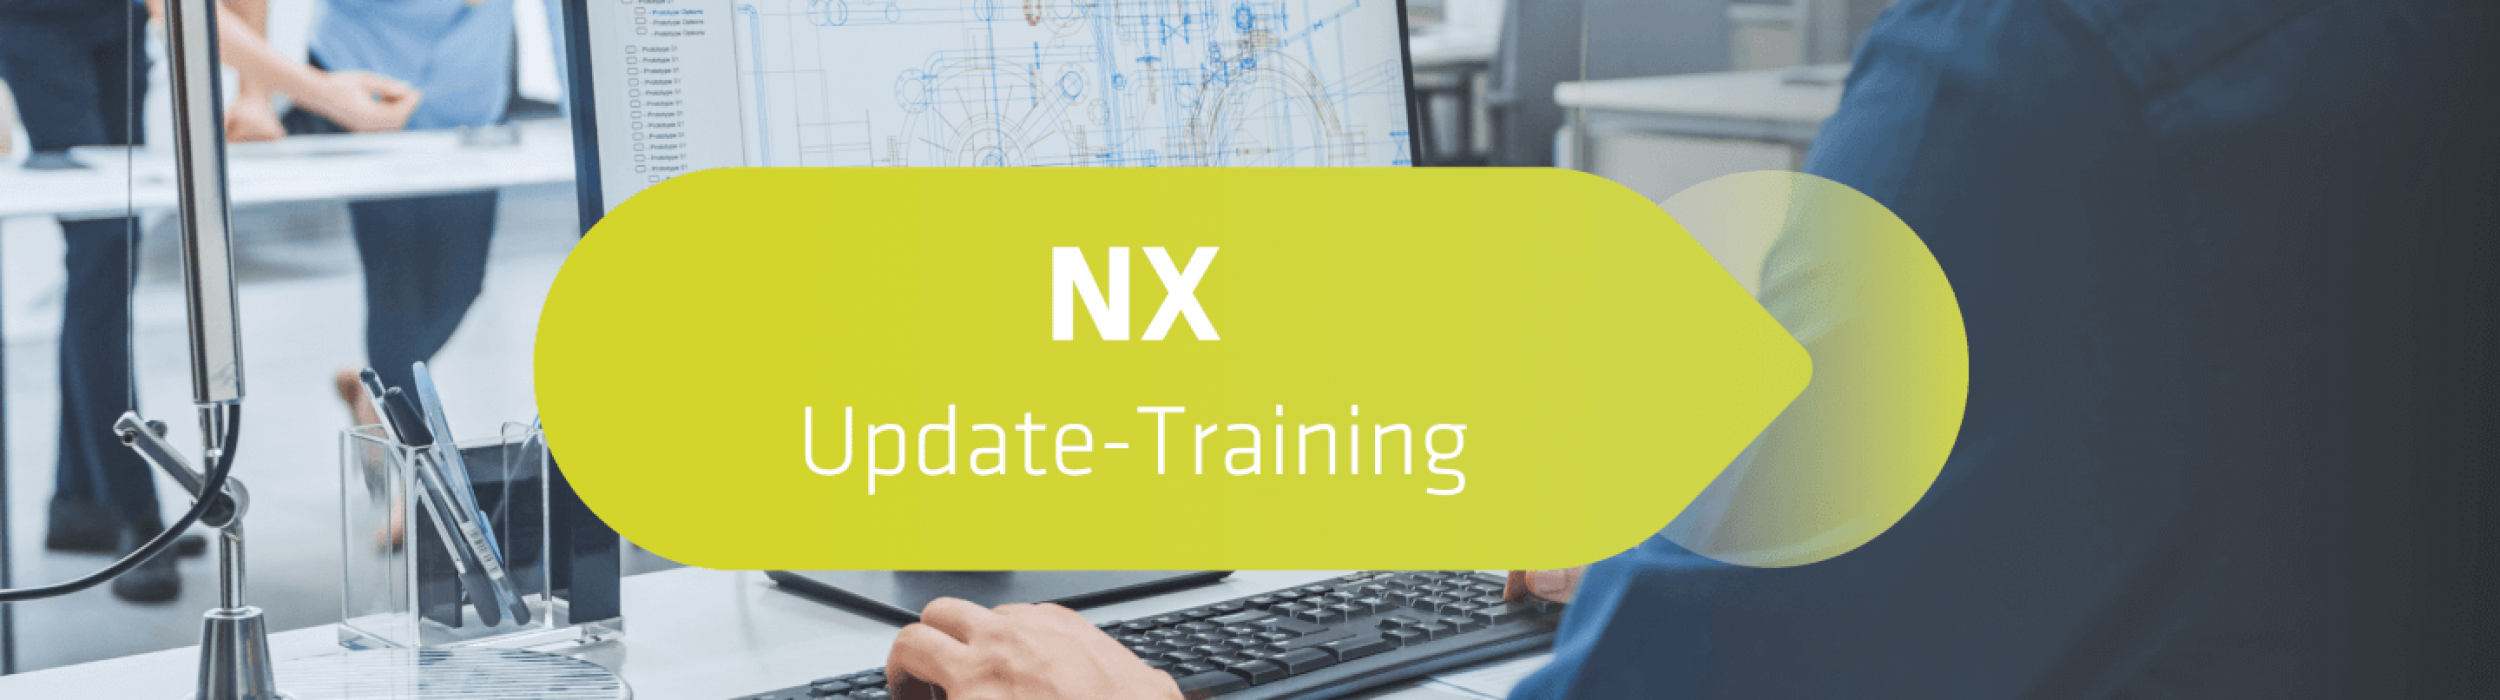 NX Update Training